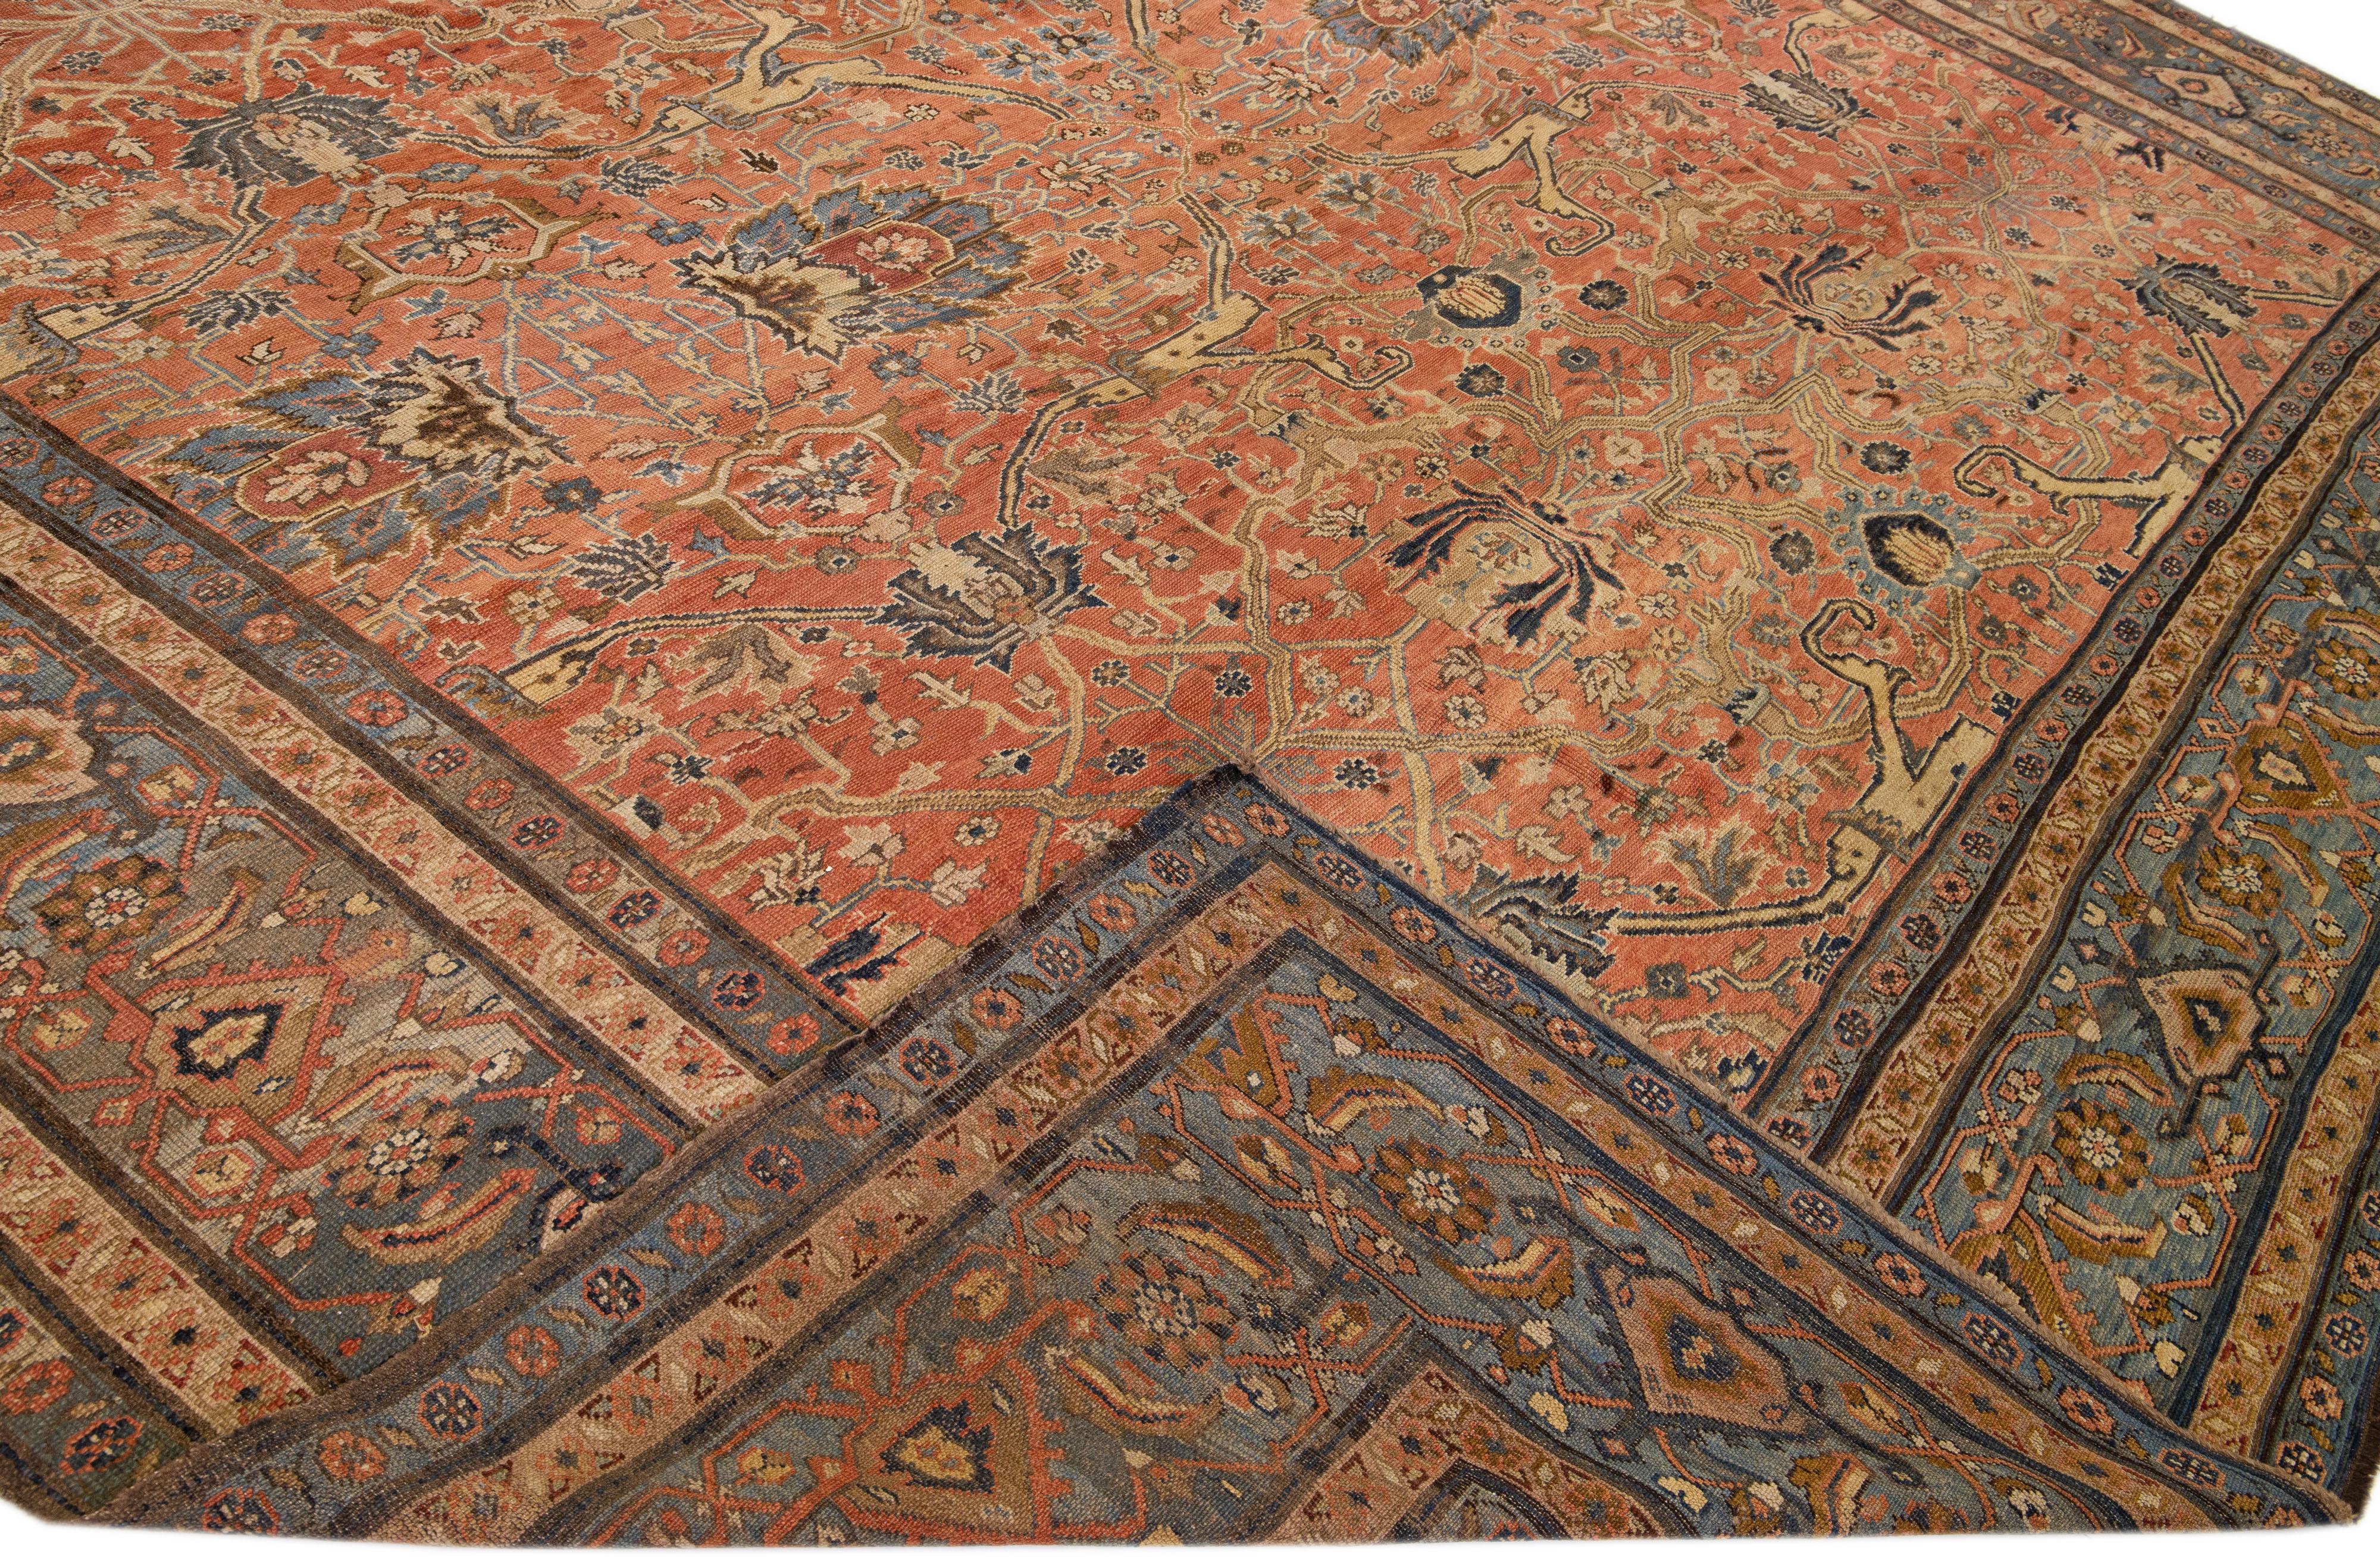 Schöner antiker Bakschaisch-Teppich aus handgeknüpfter Wolle mit rostfarbenem Feld. Dieses Stück hat einen blauen Rahmen und beigefarbene Akzente auf einem prächtigen klassischen All-Over-Blumenmuster.

Dieser Teppich misst 14'4